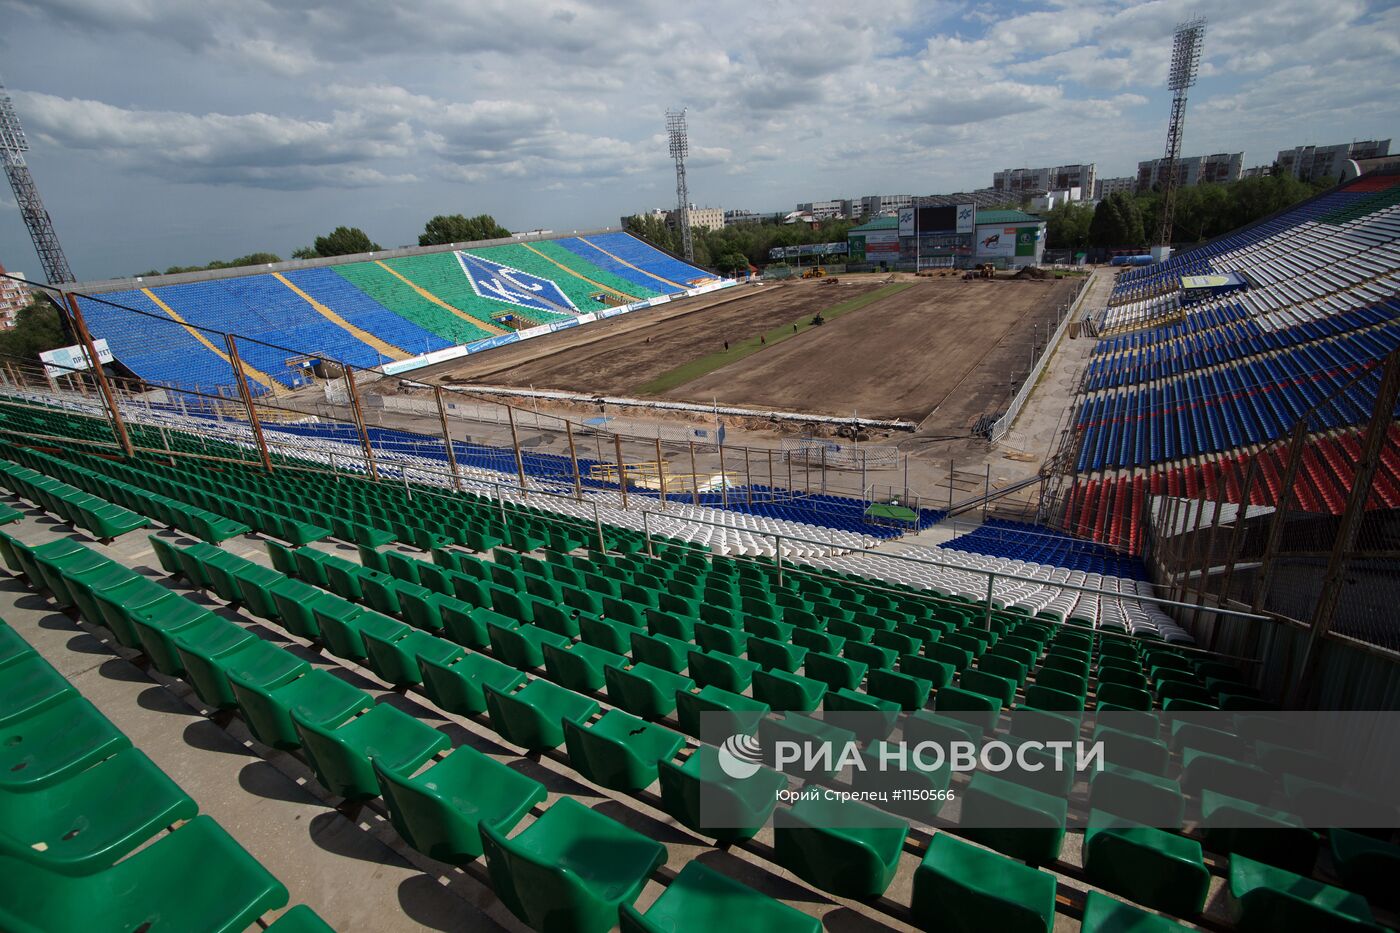 Подготовка нового газона и другие работы на стадионе "Металлург"